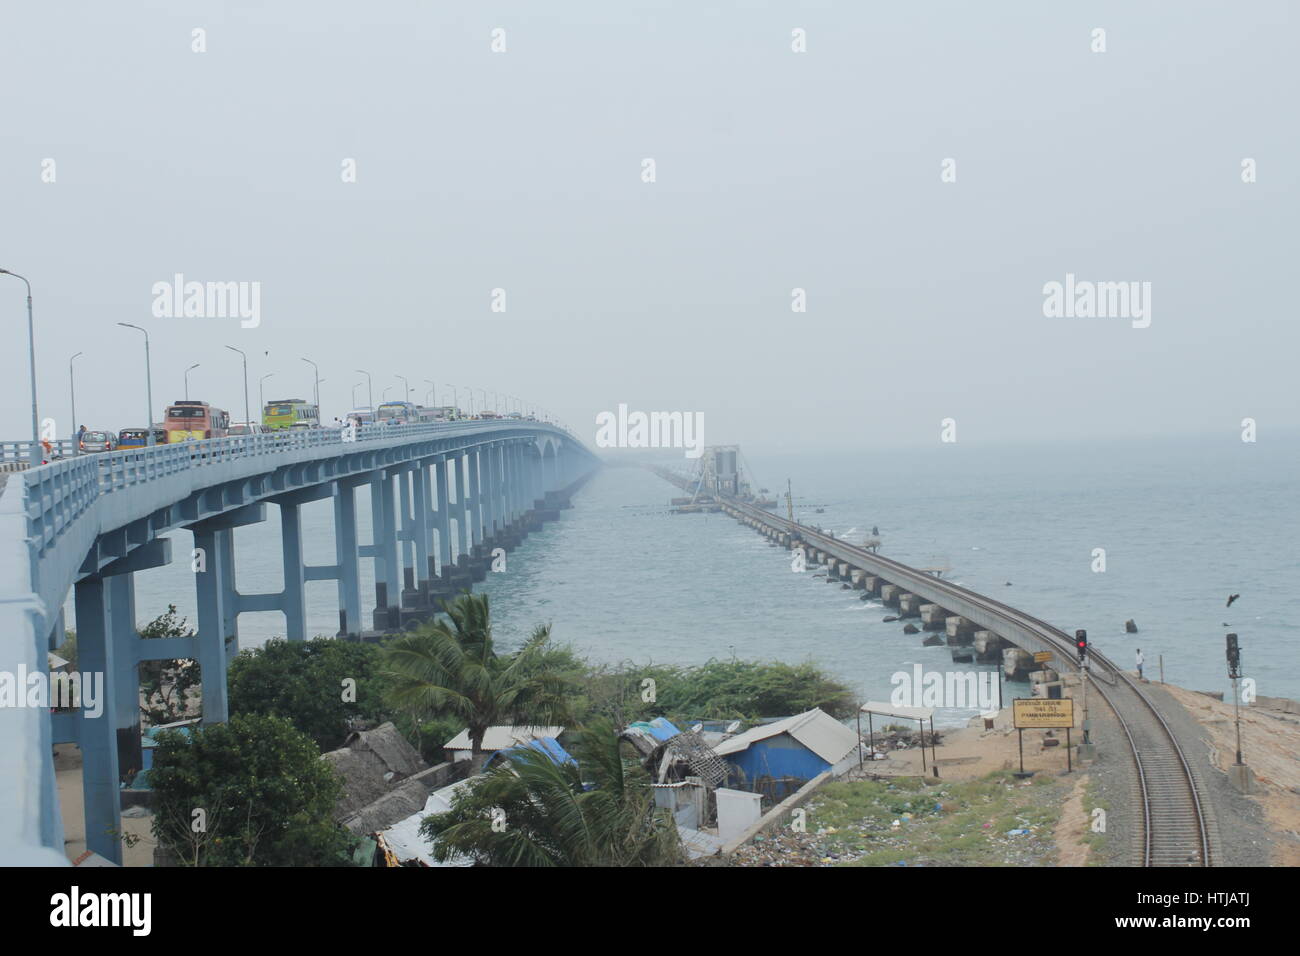 L'pamban bridge et le pont de chemin de fer qui relient le Tamil Nadu et l'île de Rameshwaram Banque D'Images